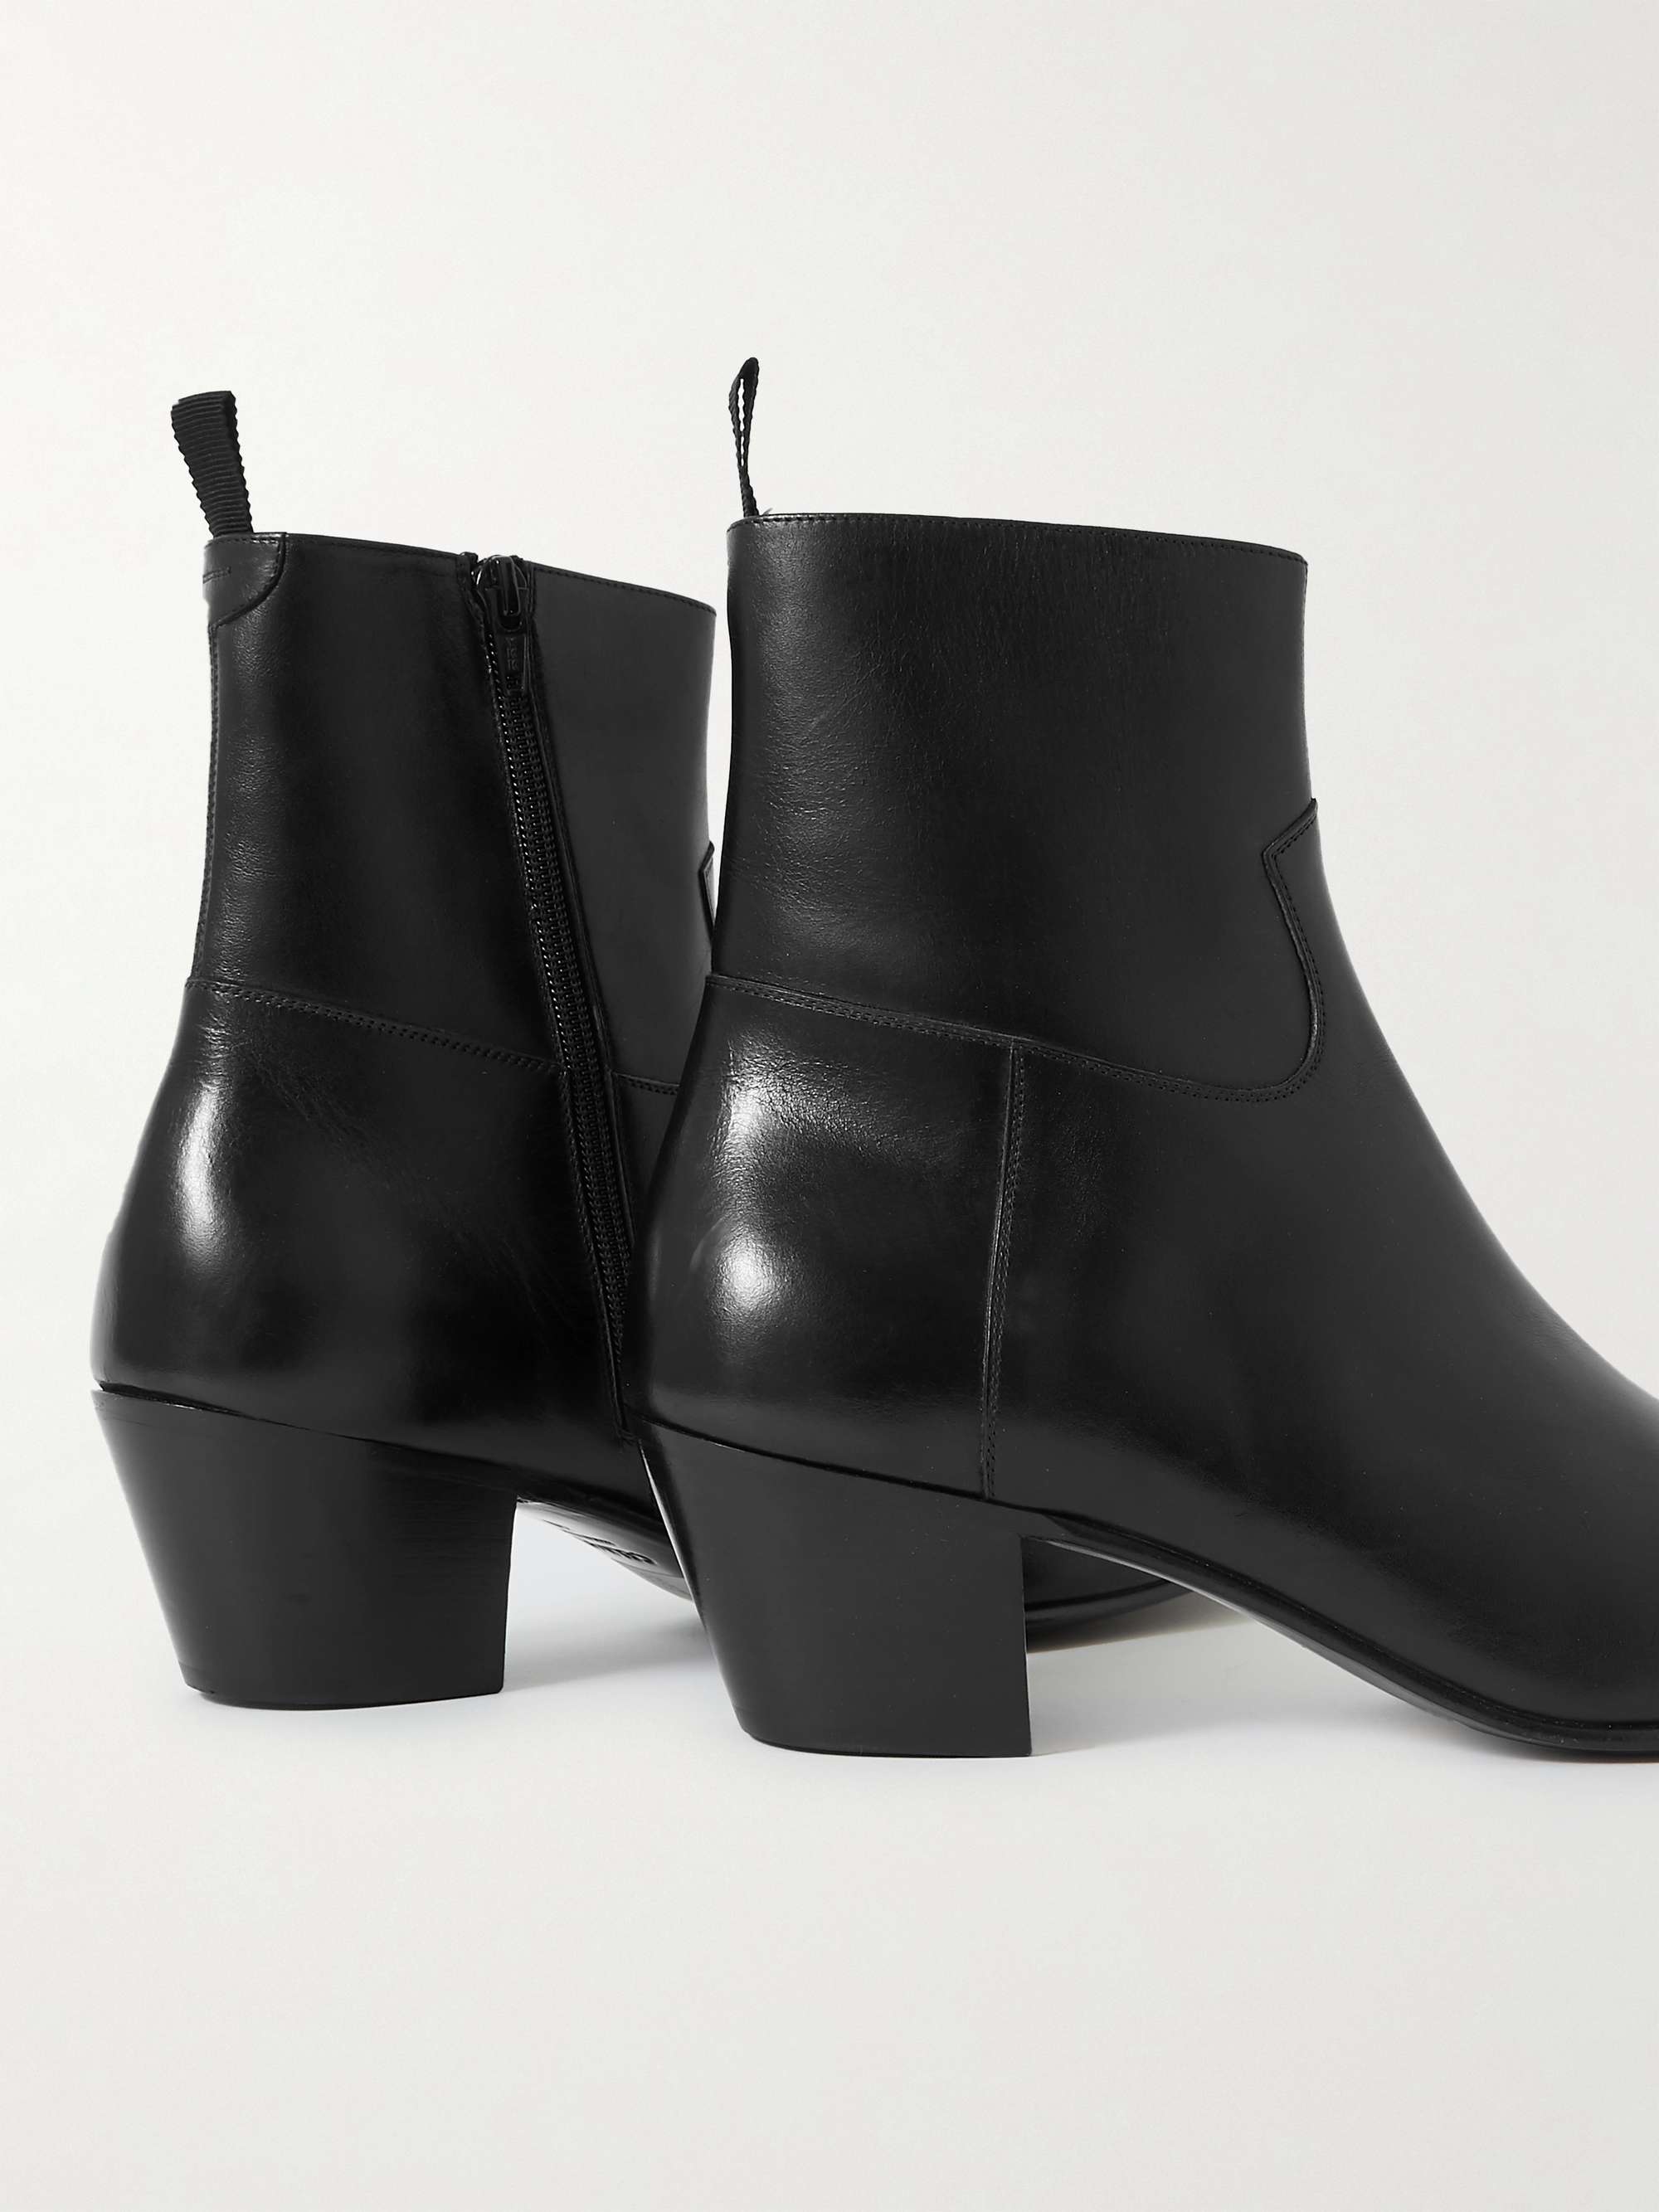 CELINE HOMME Jacno Leather Boots for Men | MR PORTER